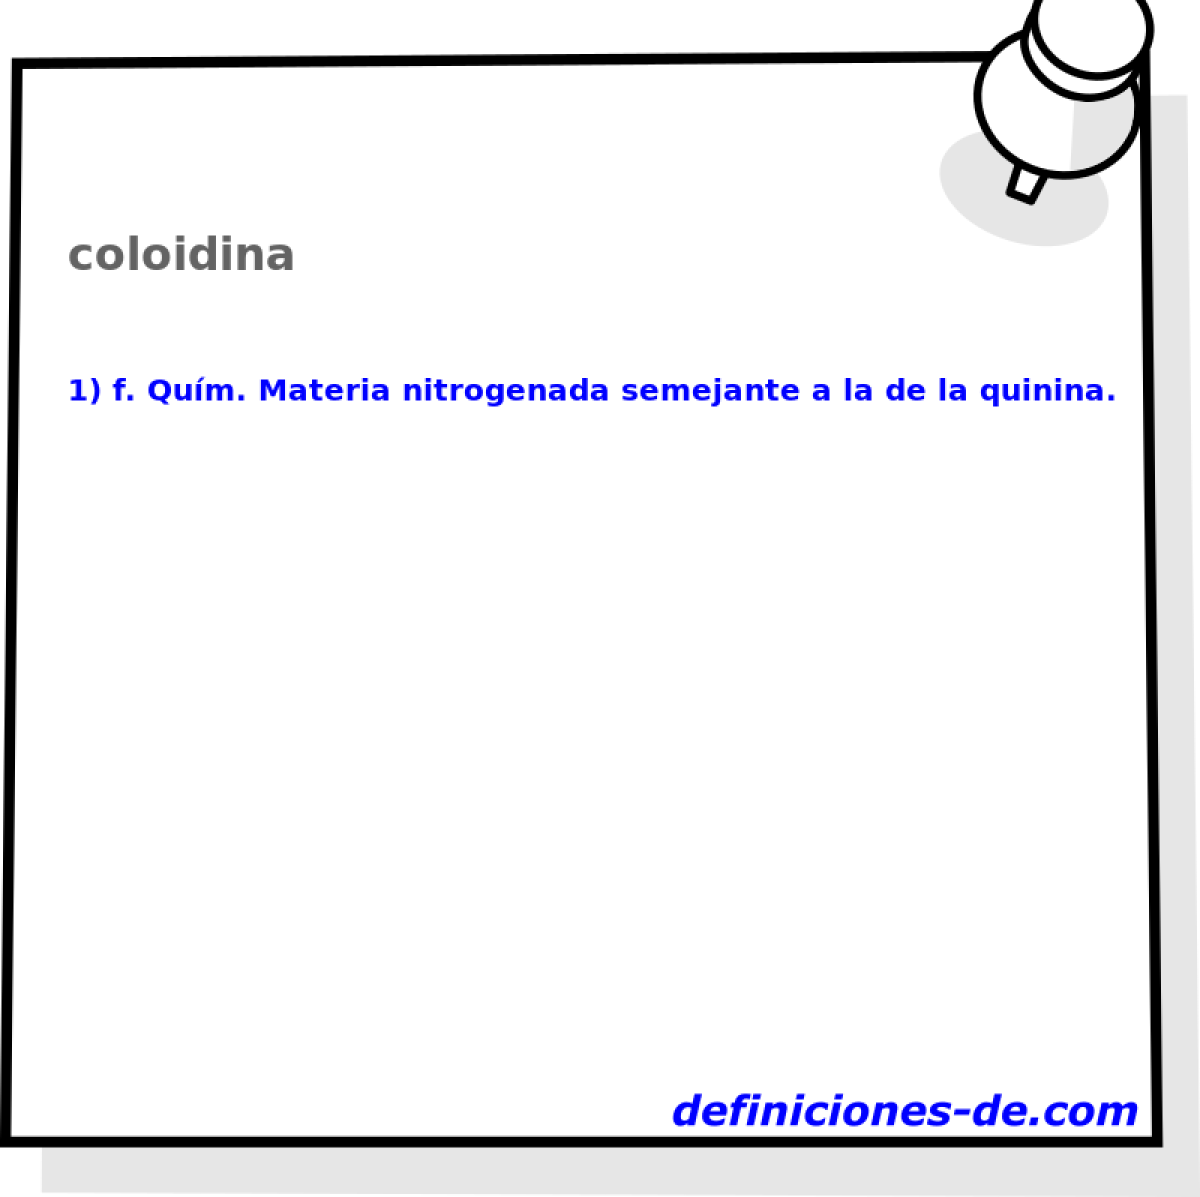 coloidina 